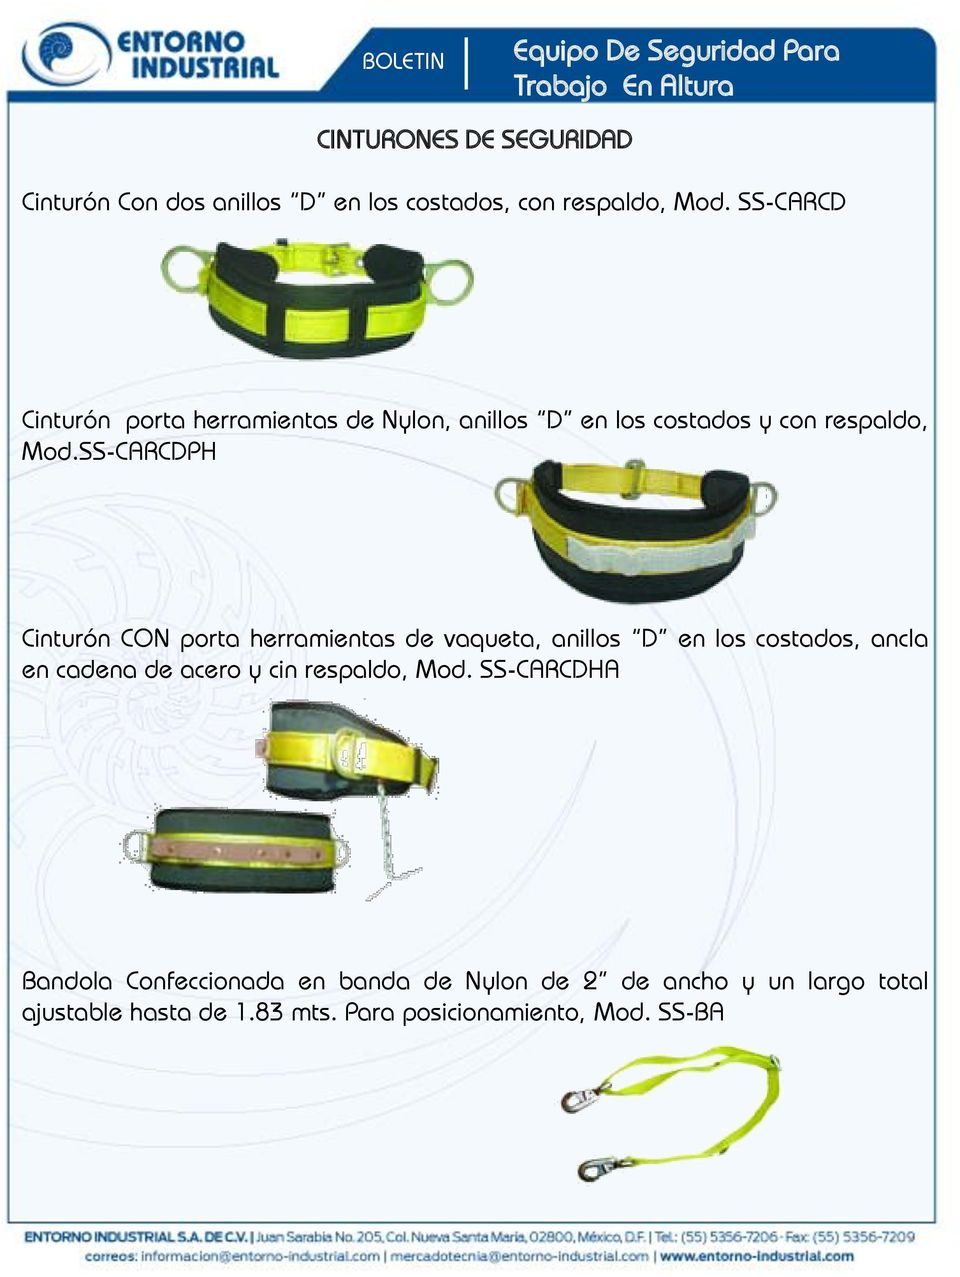 SS-CARCDPH Cinturón CON porta herramientas de vaqueta, anillos D en los costados, ancla en cadena de acero y cin